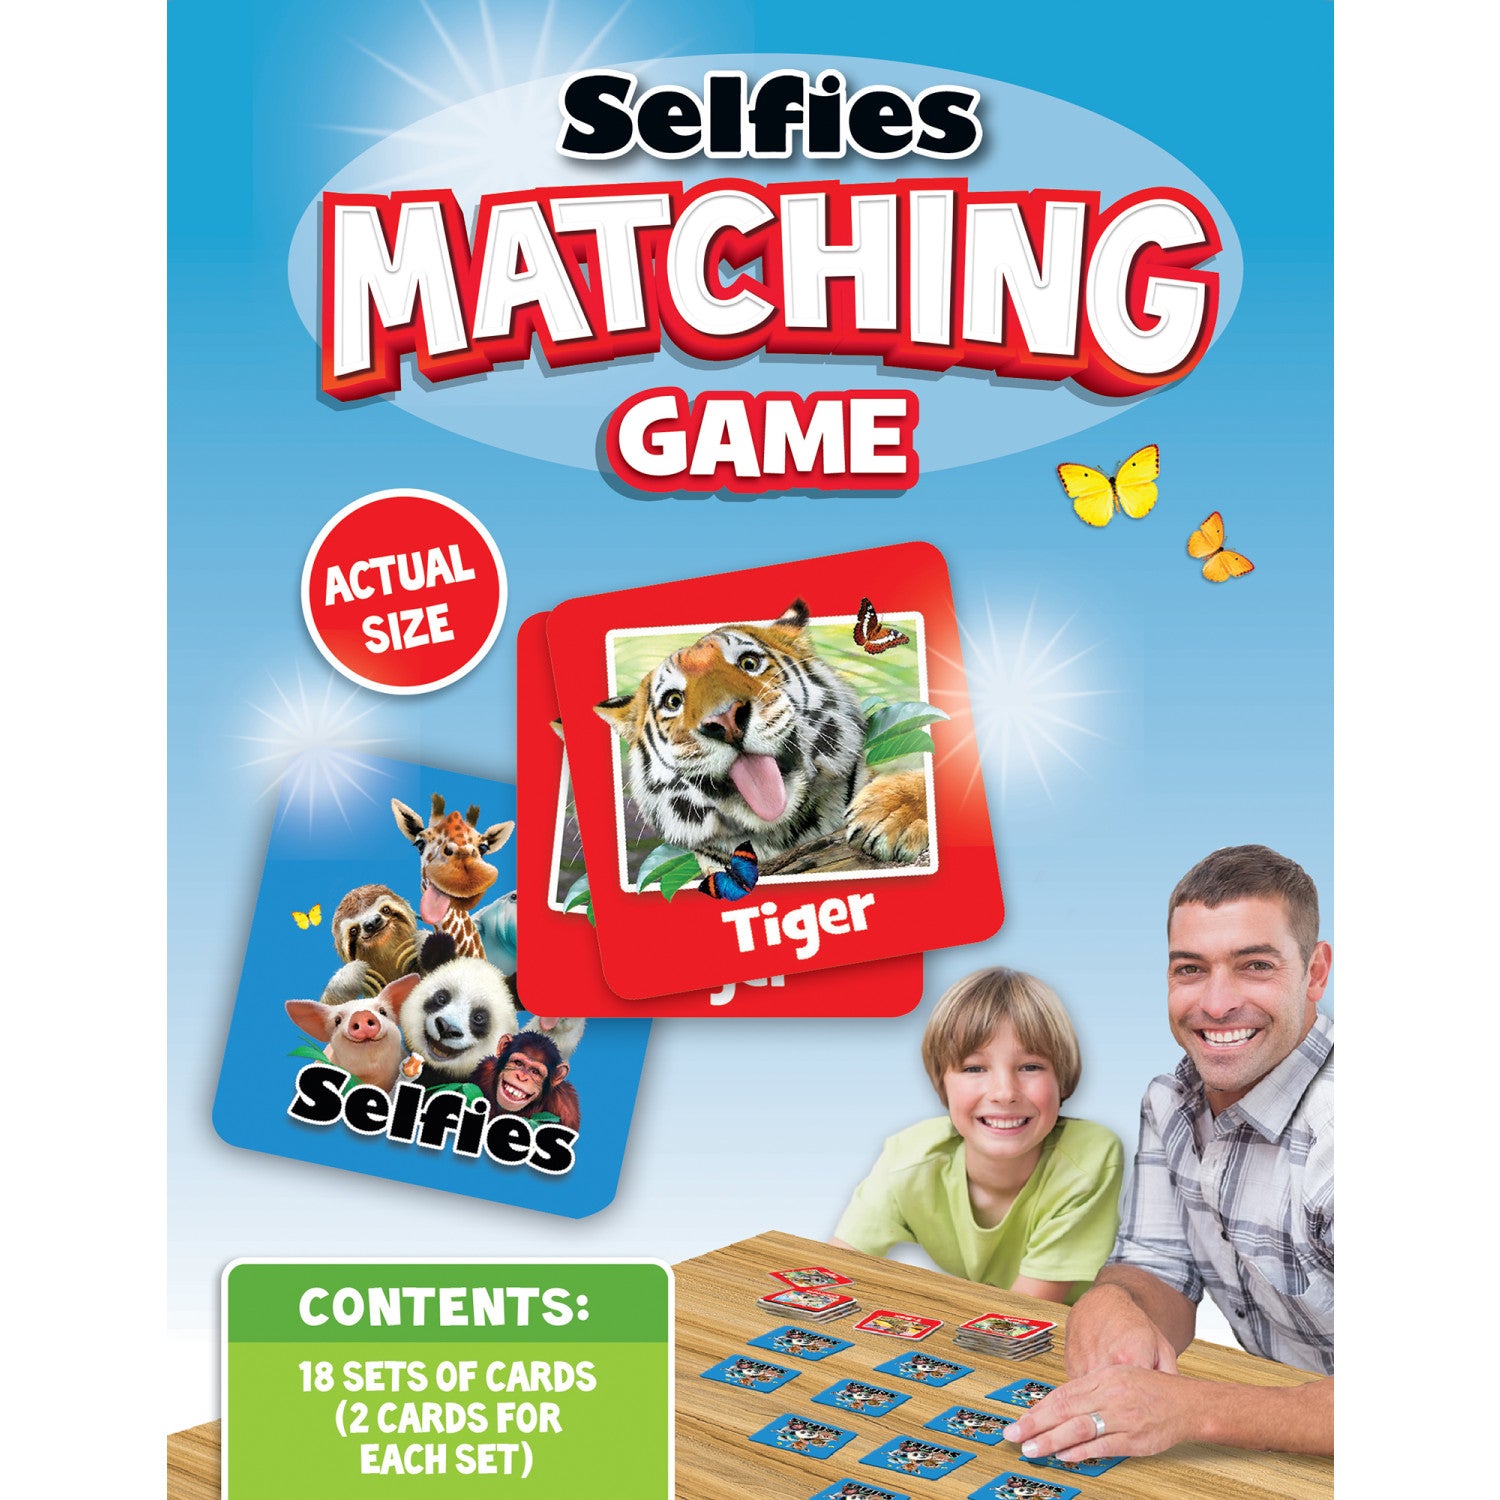 Selfies Matching Game